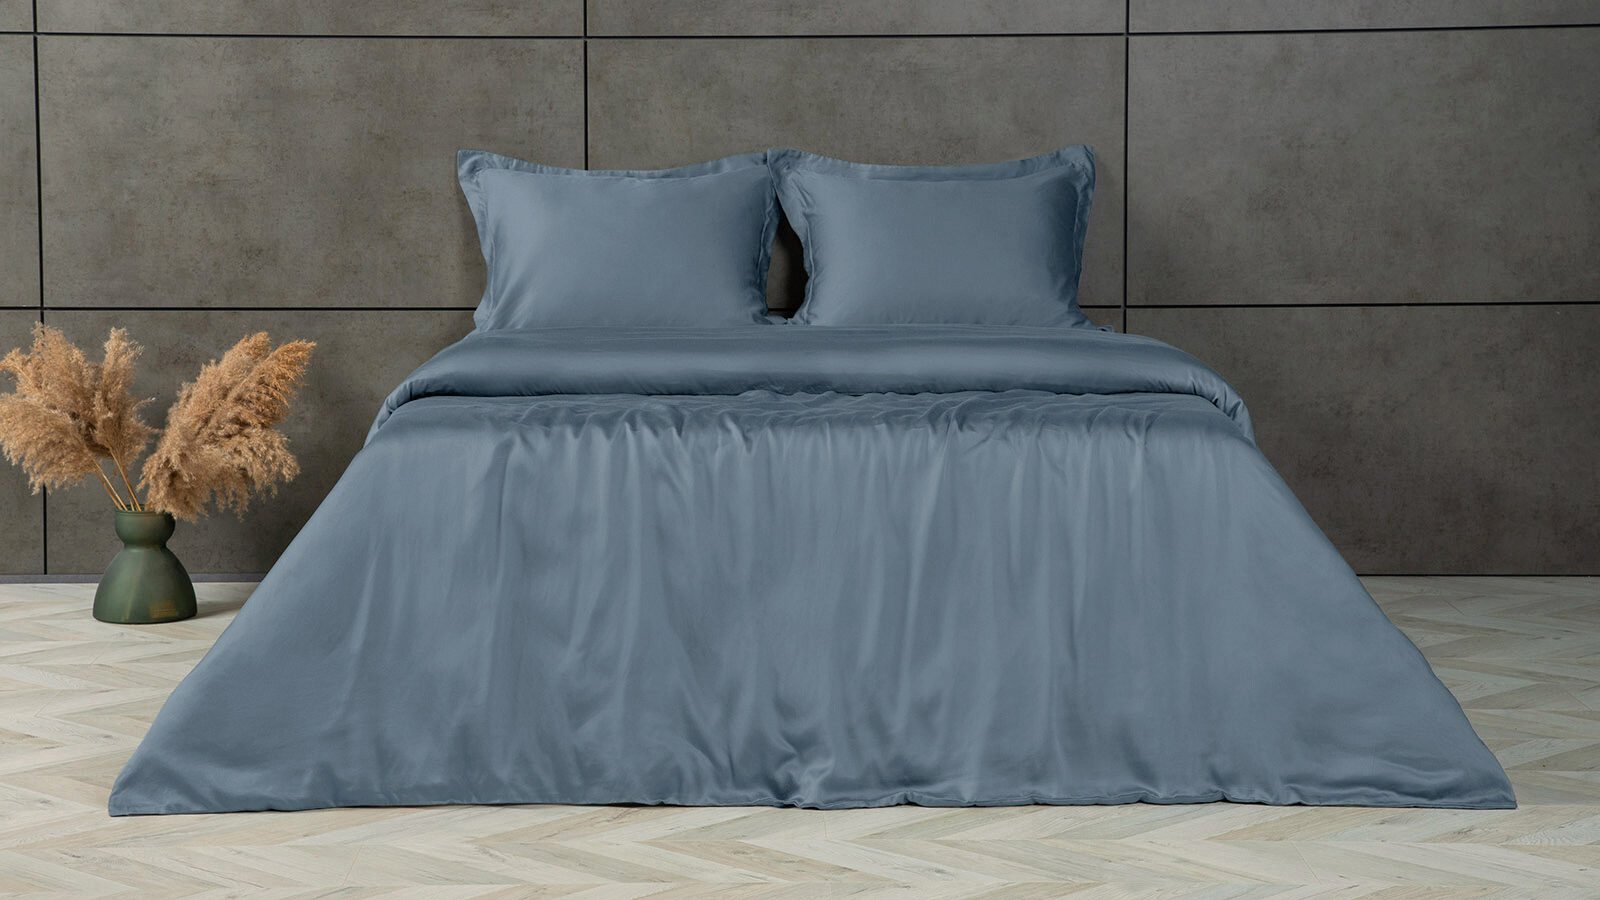 Комплект постельного белья Solid Tencel, цвет Синий металлик комплект постельного белья solid tencel лавандовый